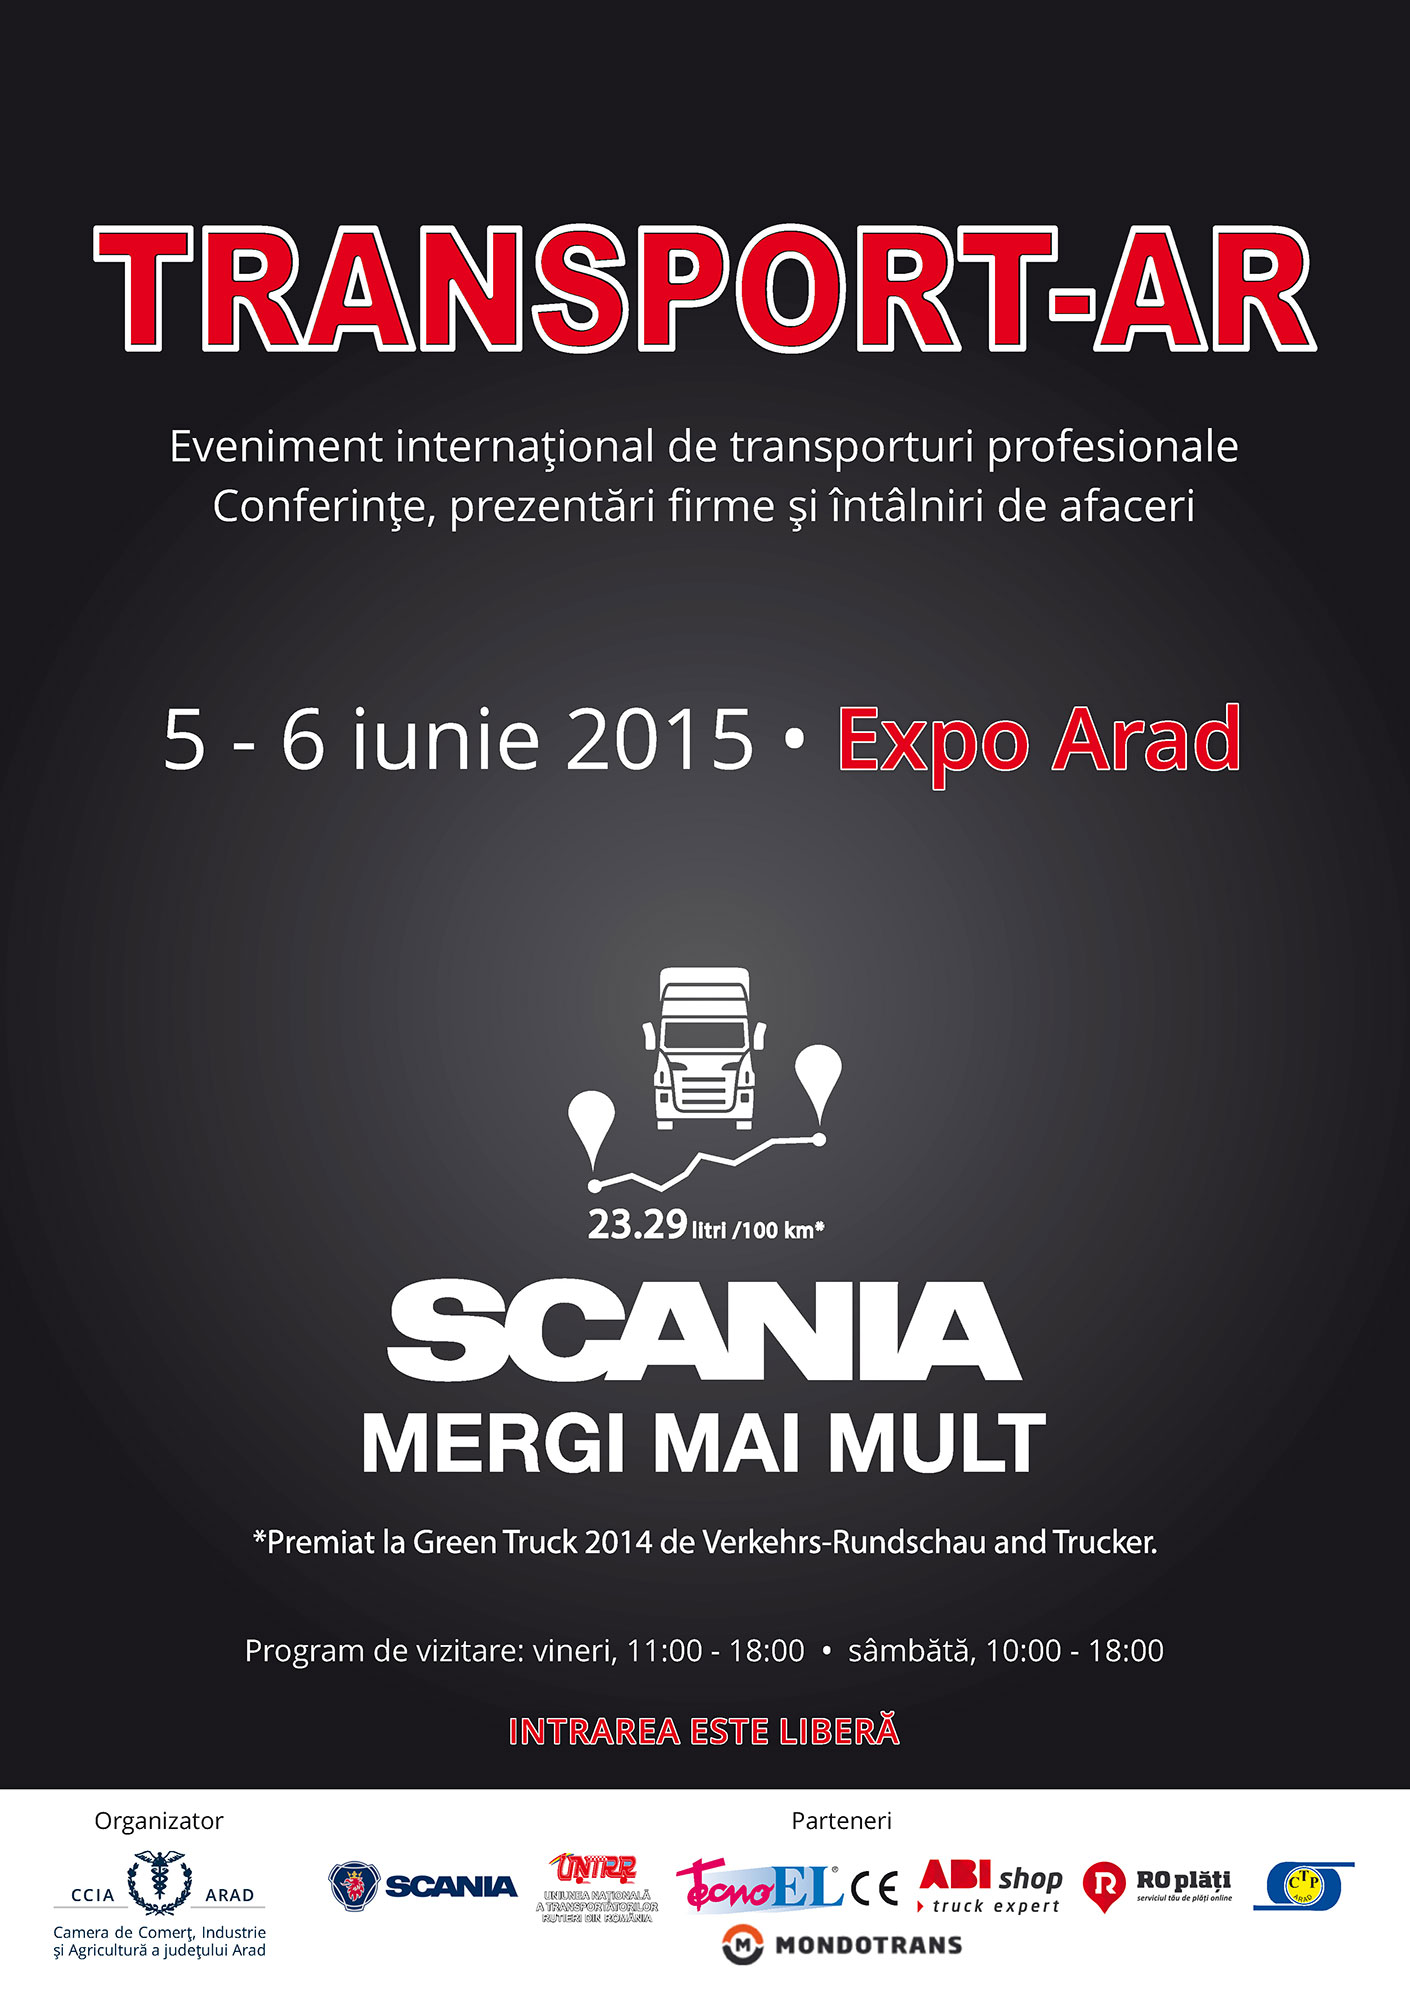 Transport AR 2015 - afisul evenimentului